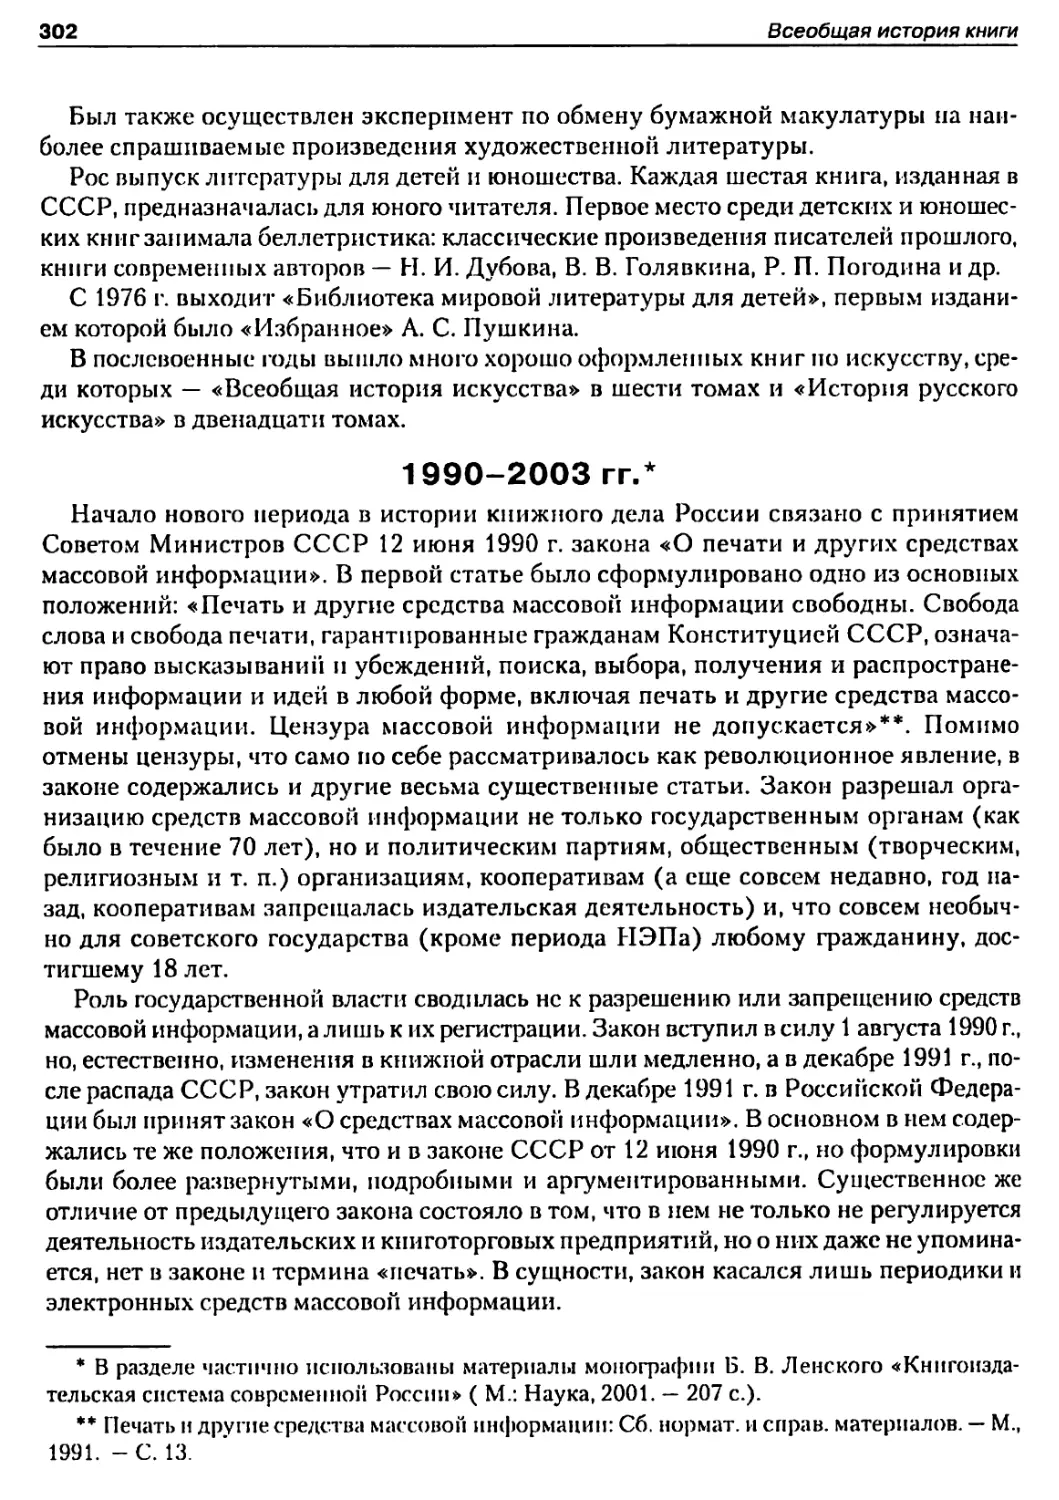 1990-2003 гг